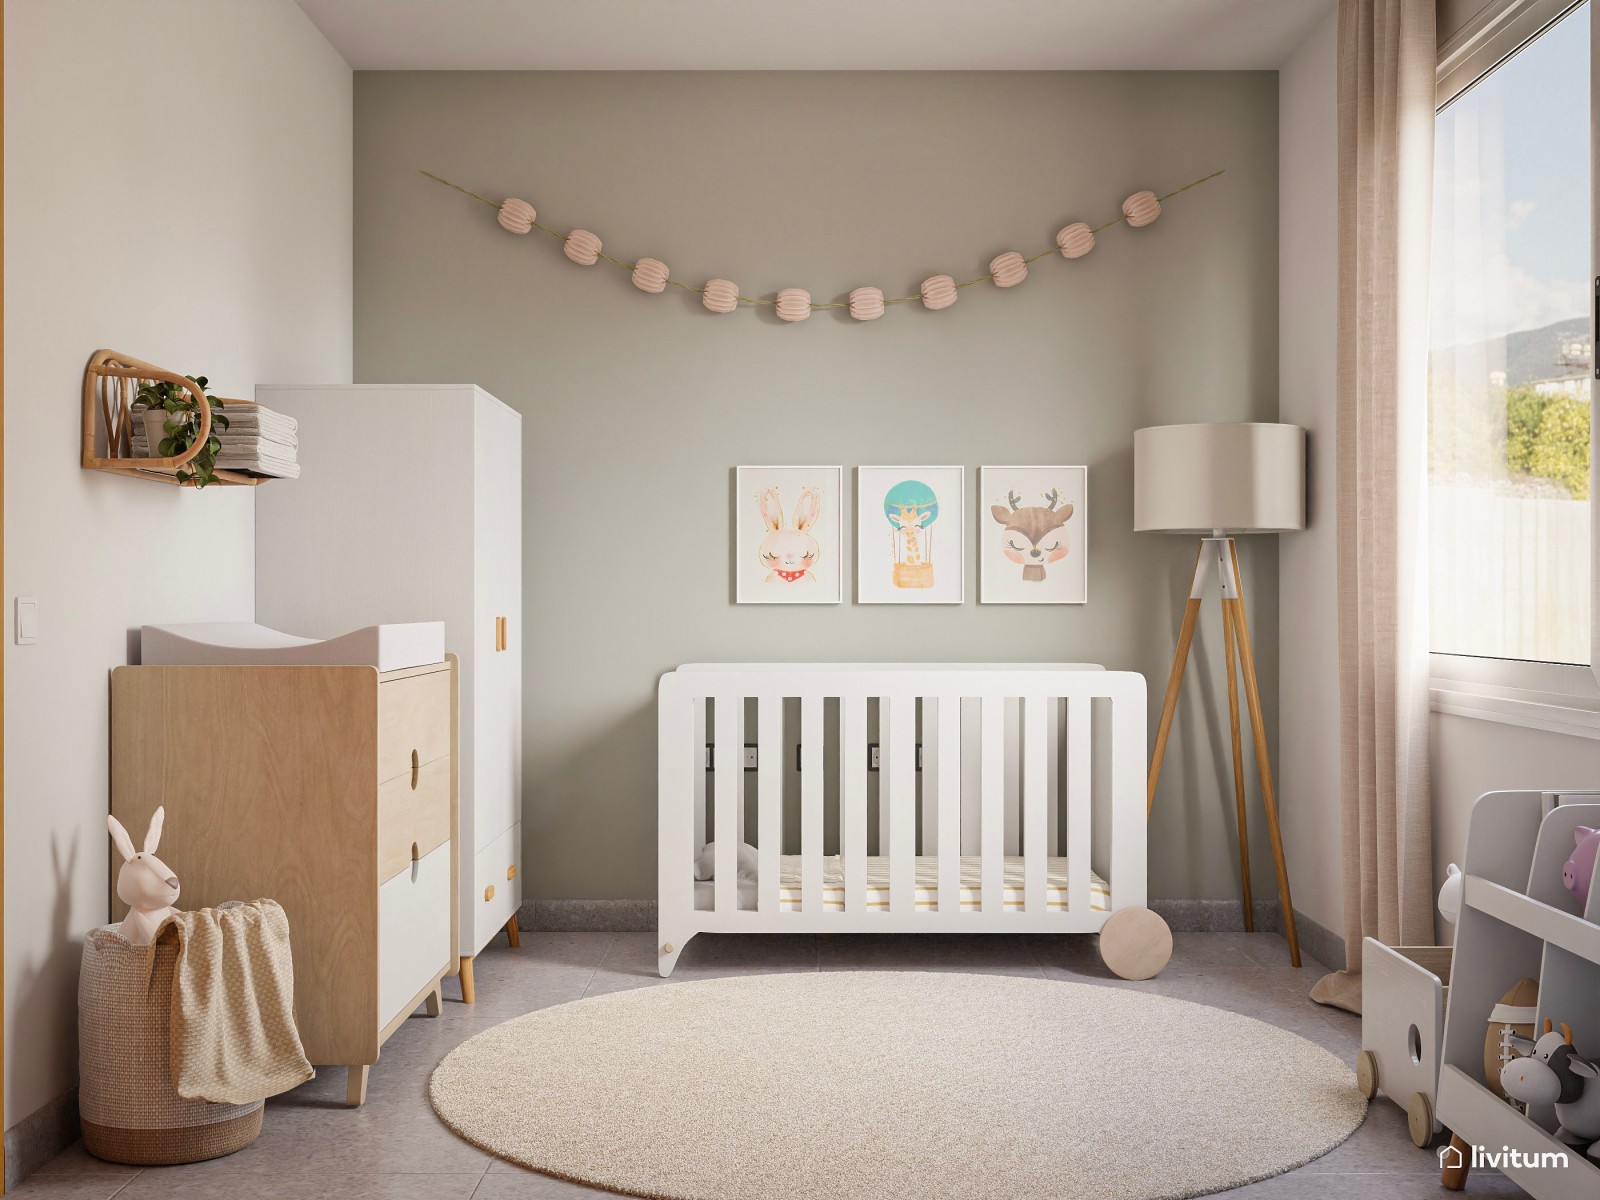 Estantería de pie de madera | Moderno estante decorativo minimalista para  sala de estar | Estantería para dormitorio de niños (Color : Estilo 2